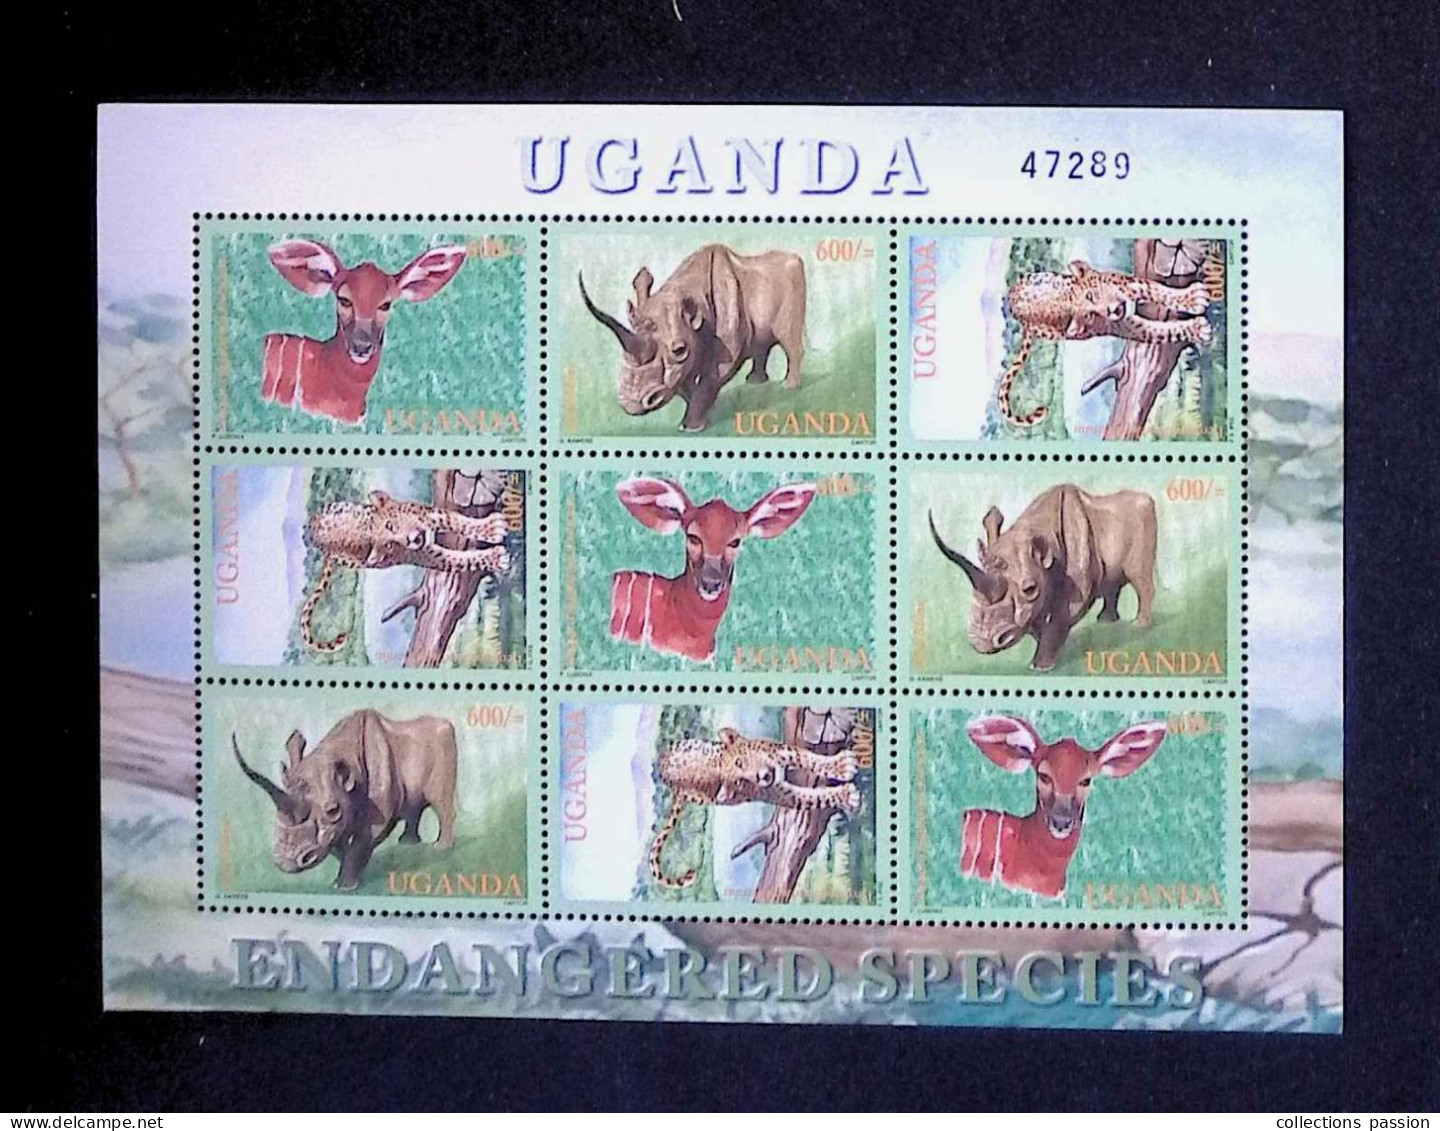 CL, Block, Bloc De 9 Timbres Neufs, 1990, Uganda, Ouganda, Endangered Species, Feuillet 47289, Frais Fr 1.75 E - Uganda (1962-...)